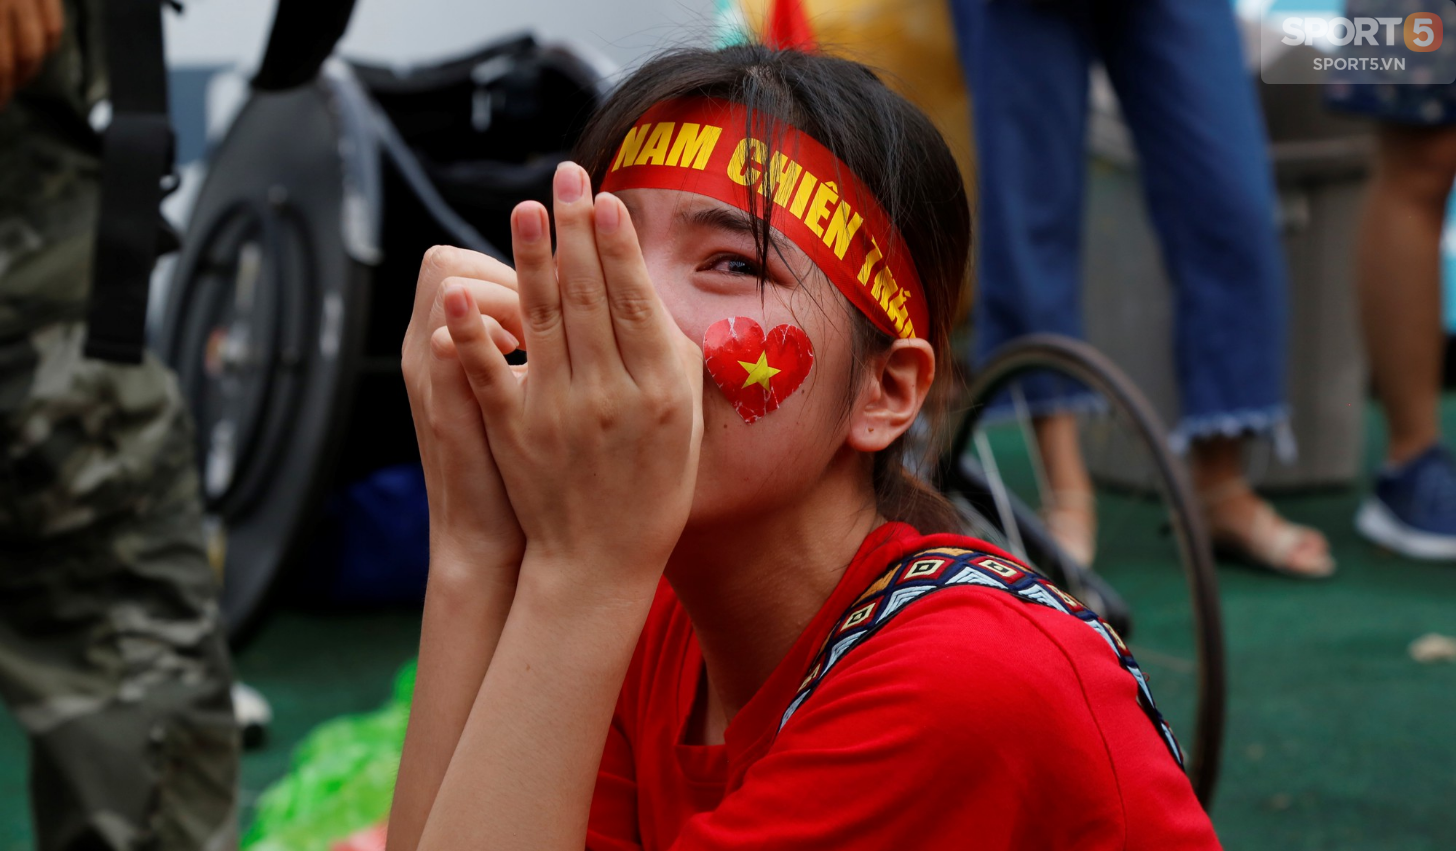 Từ cái chắp tay cầu nguyện tới khóe mắt đỏ hoe của người hâm mộ vì Olympic Việt Nam gục ngã - Ảnh 9.